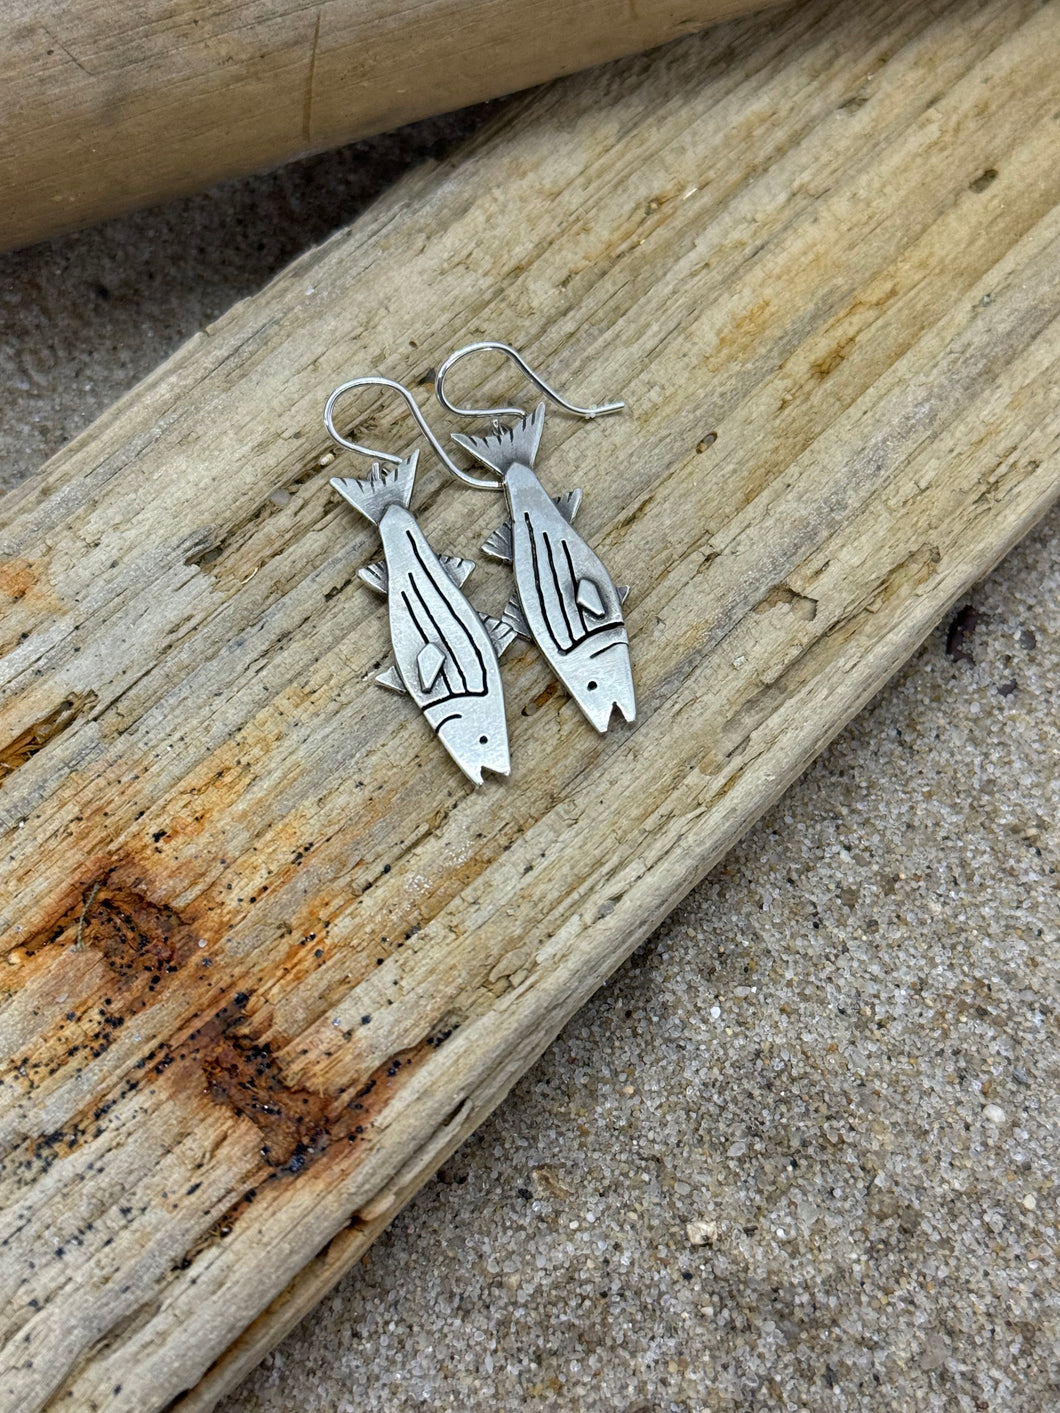 Striped Bass earrings